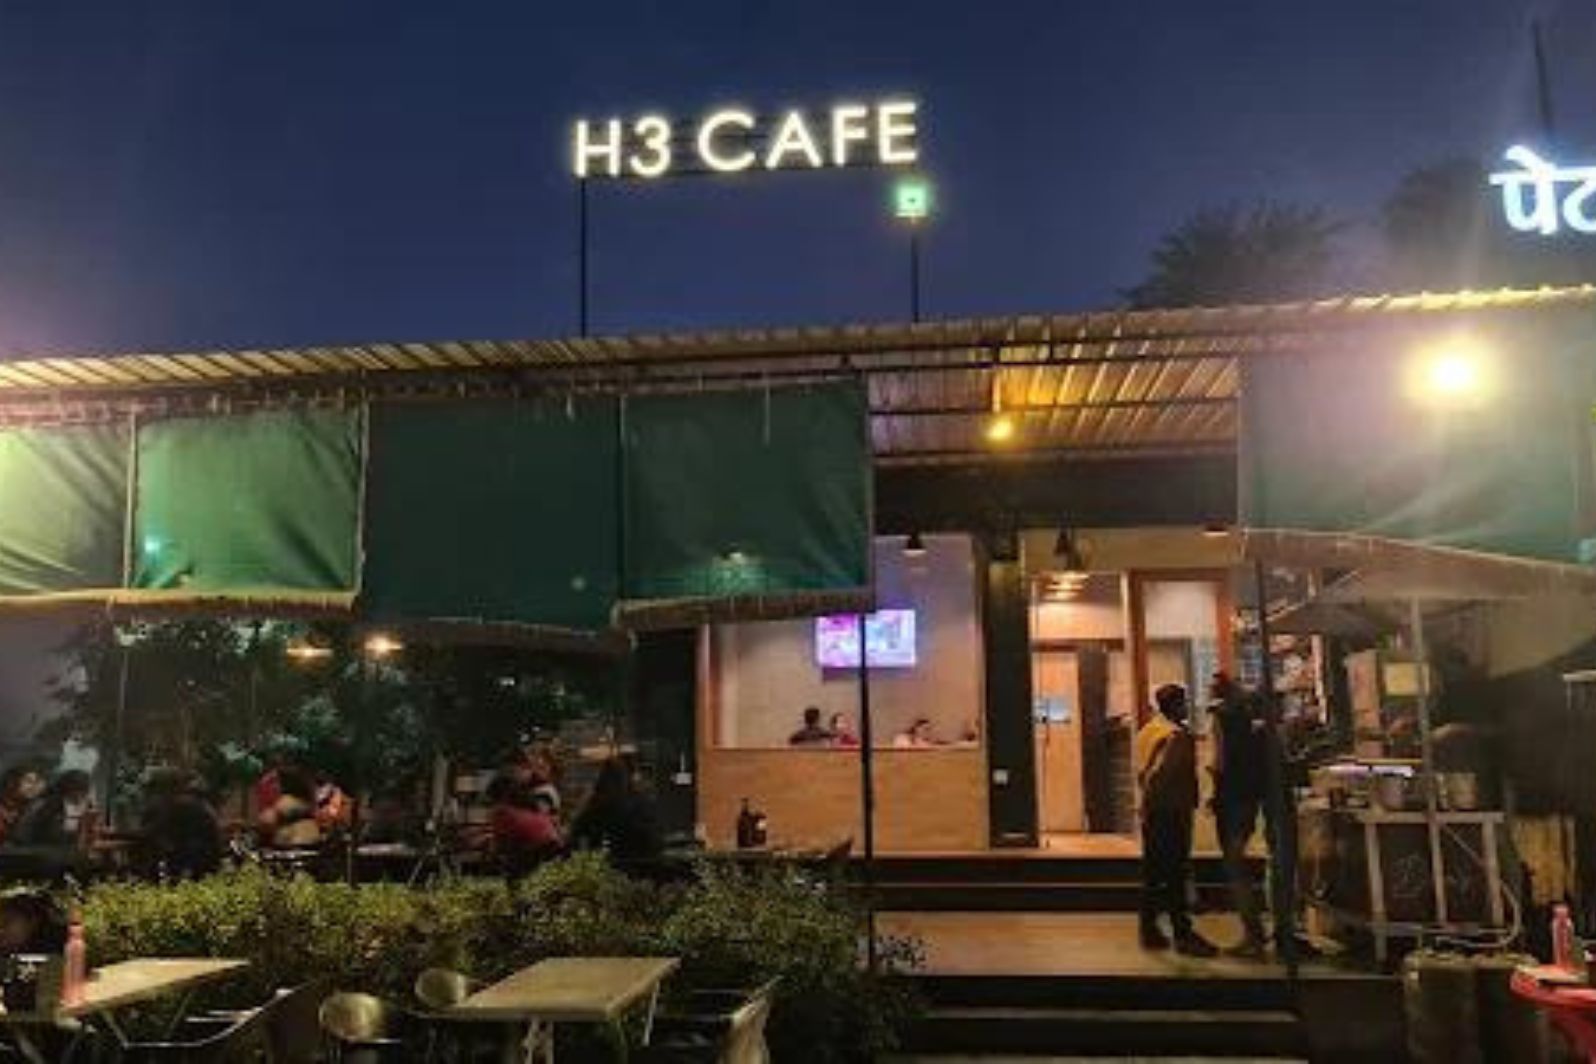 dosa planet - h3 cafe bhilwara rajasthan